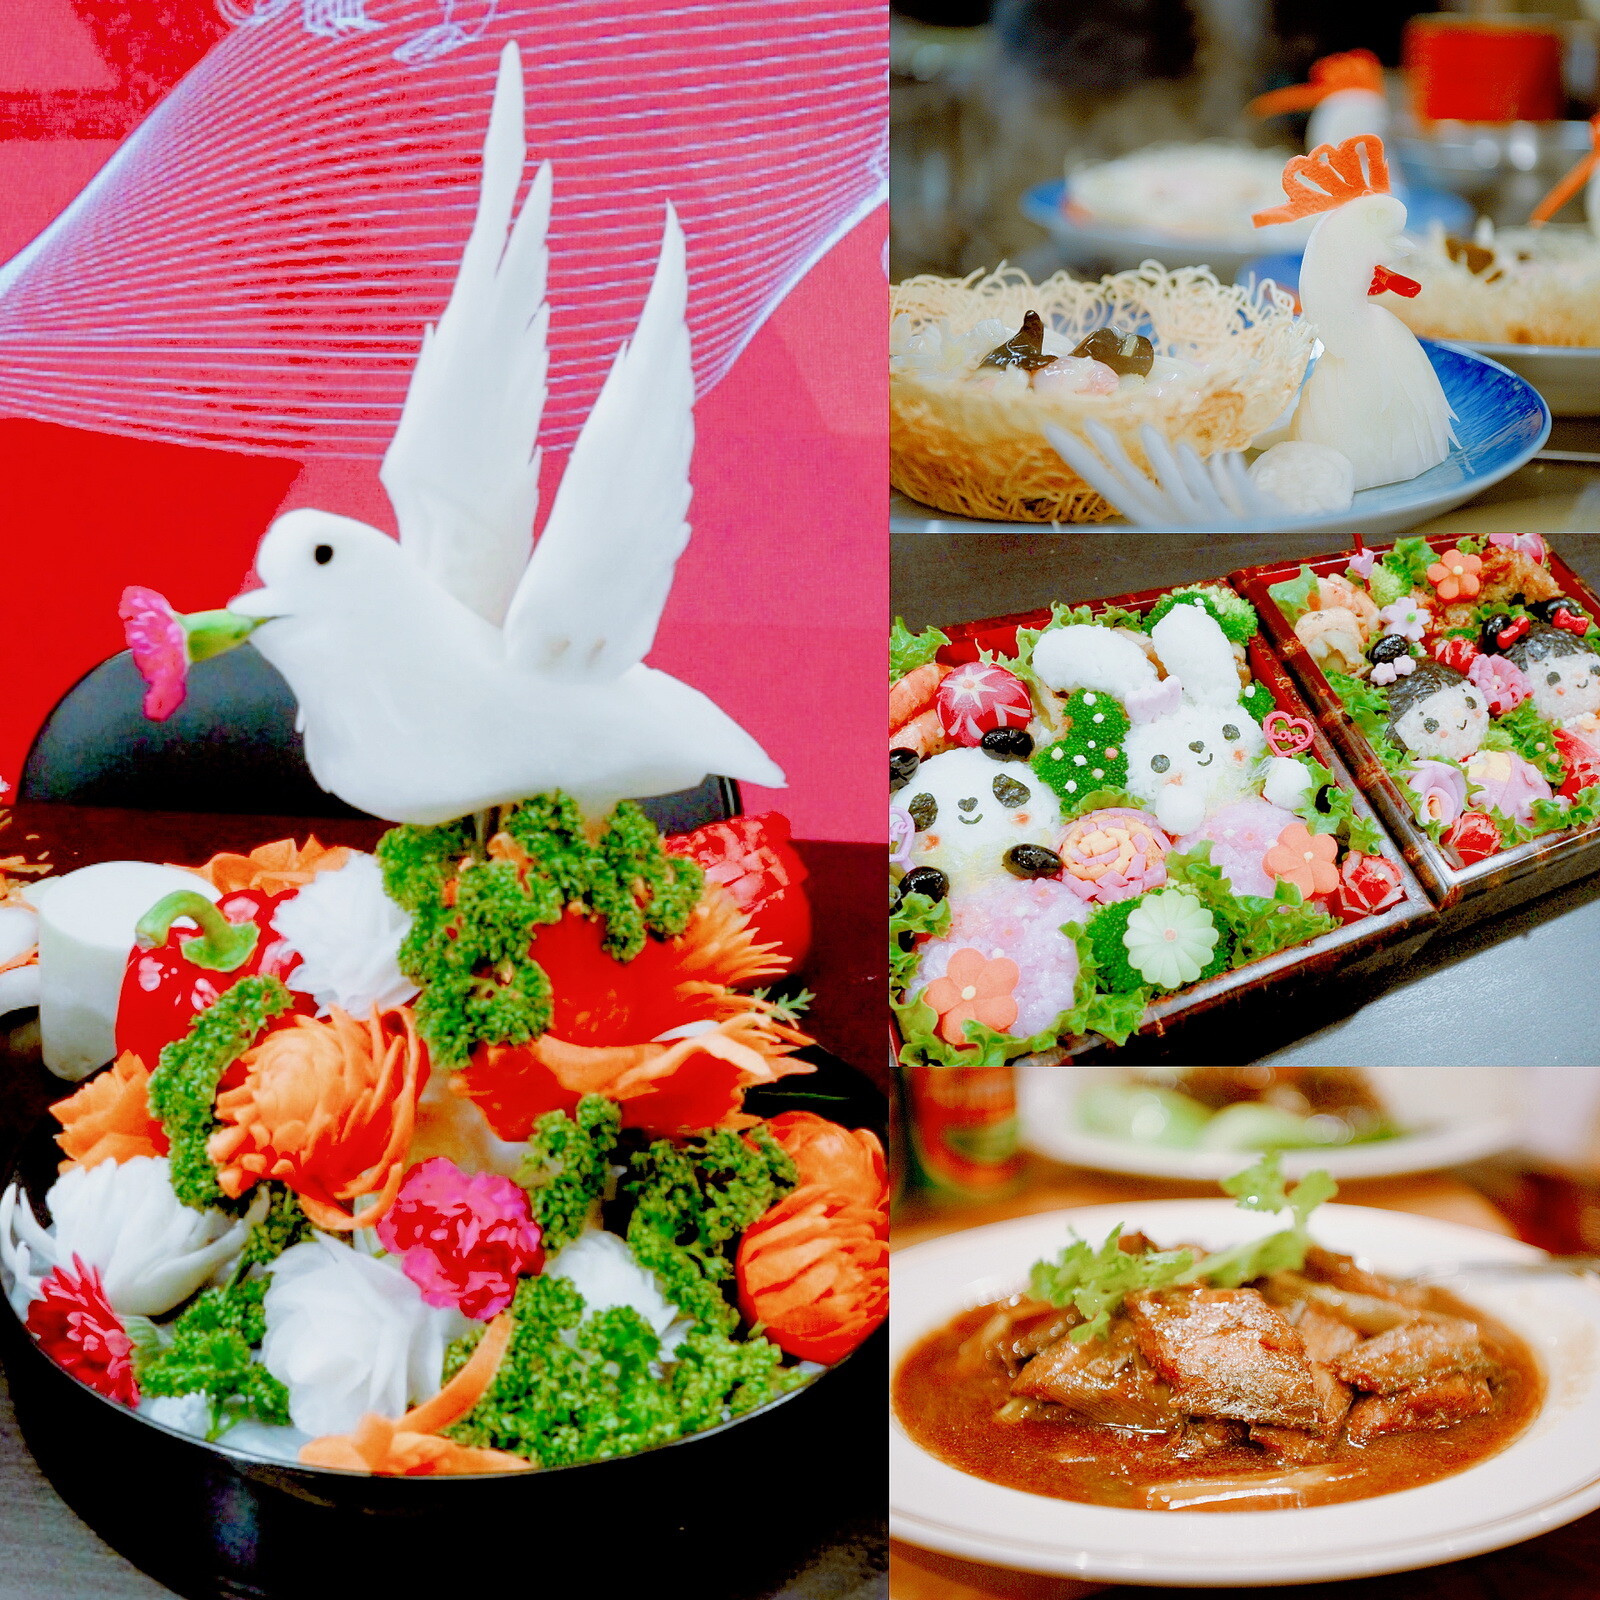 มณฑลเหลียวหนิงจัดอีเวนต์โปรโมทวัฒนธรรมอาหารที่โตเกียว ปลื้มงานประสบความสำเร็จเป็นอย่างดี